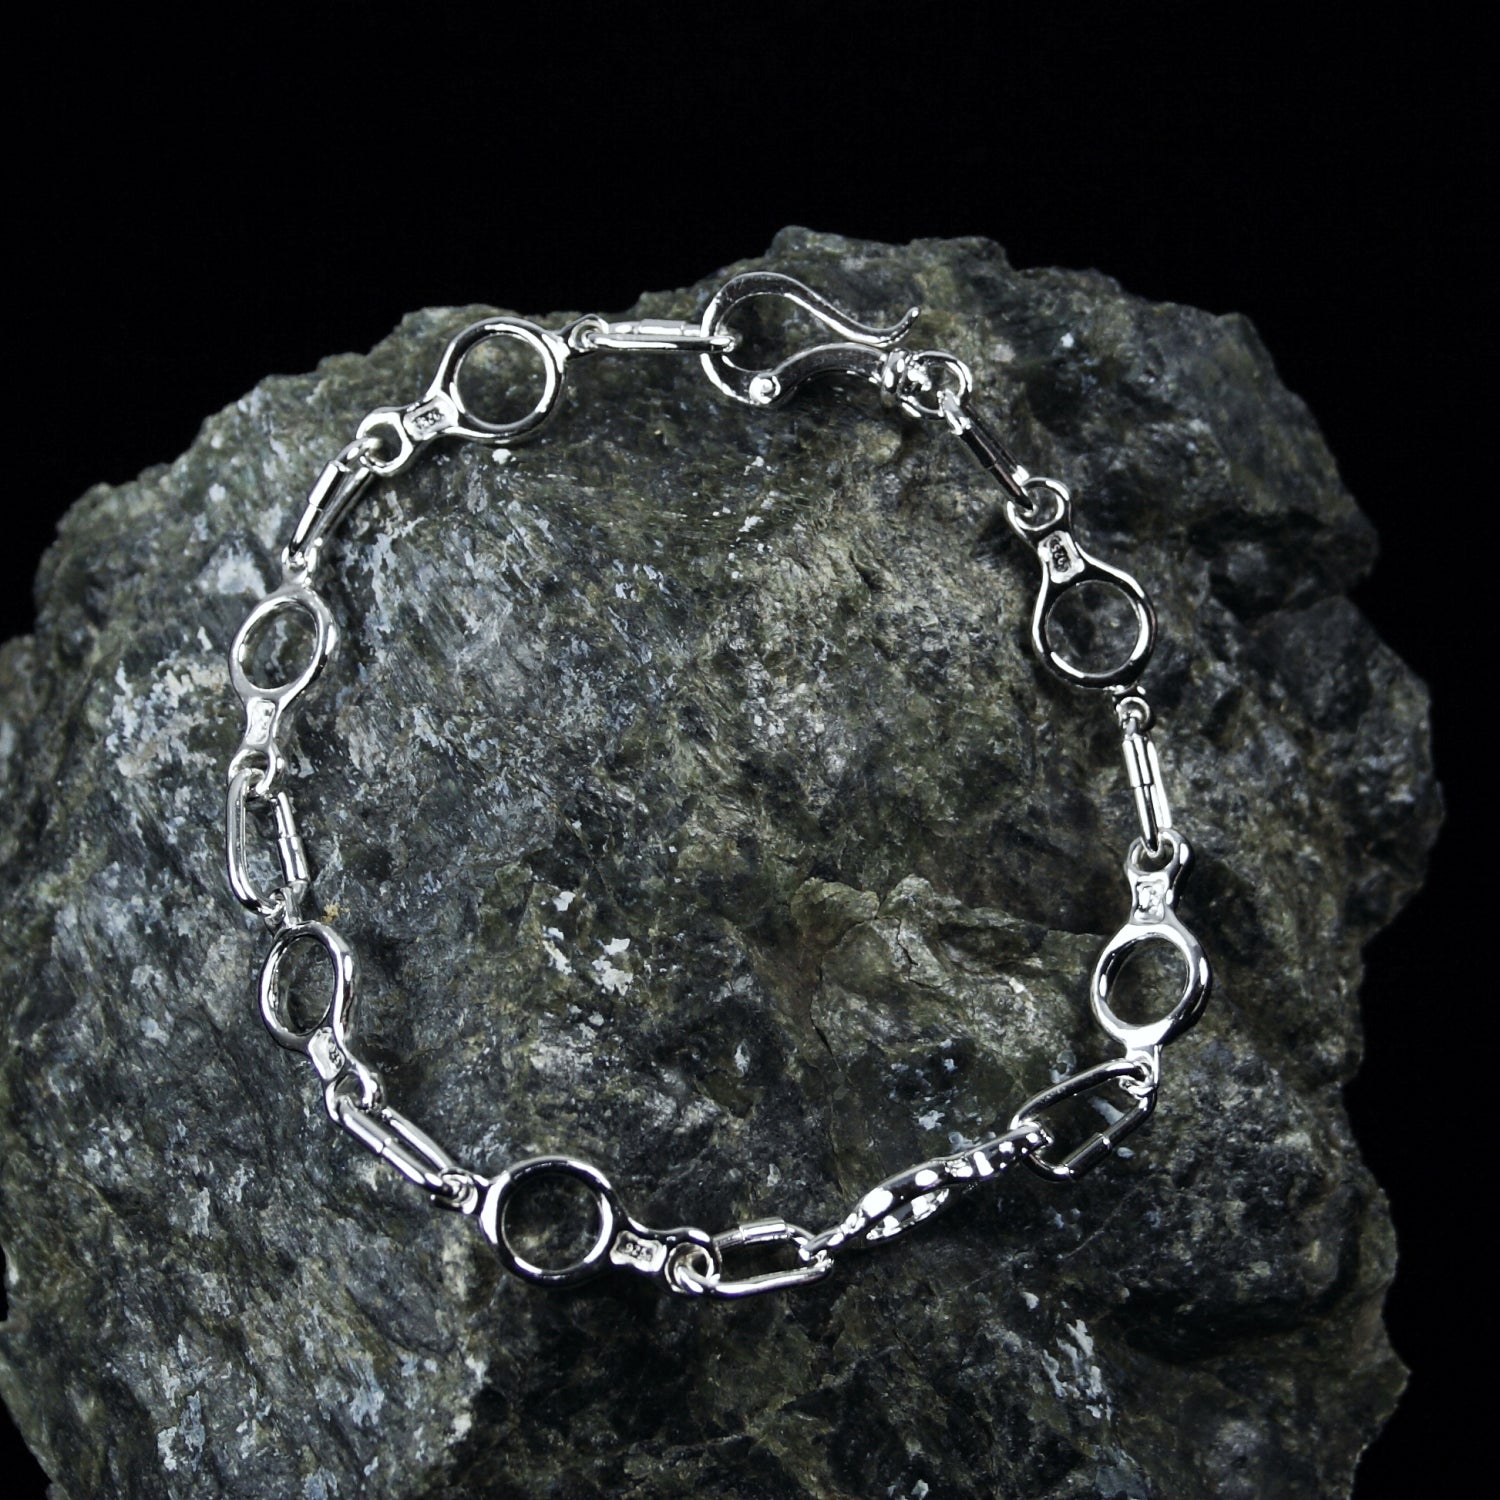 Figure 8 Descender Linked Bracelet - Handmade in sterling silver - Rock background